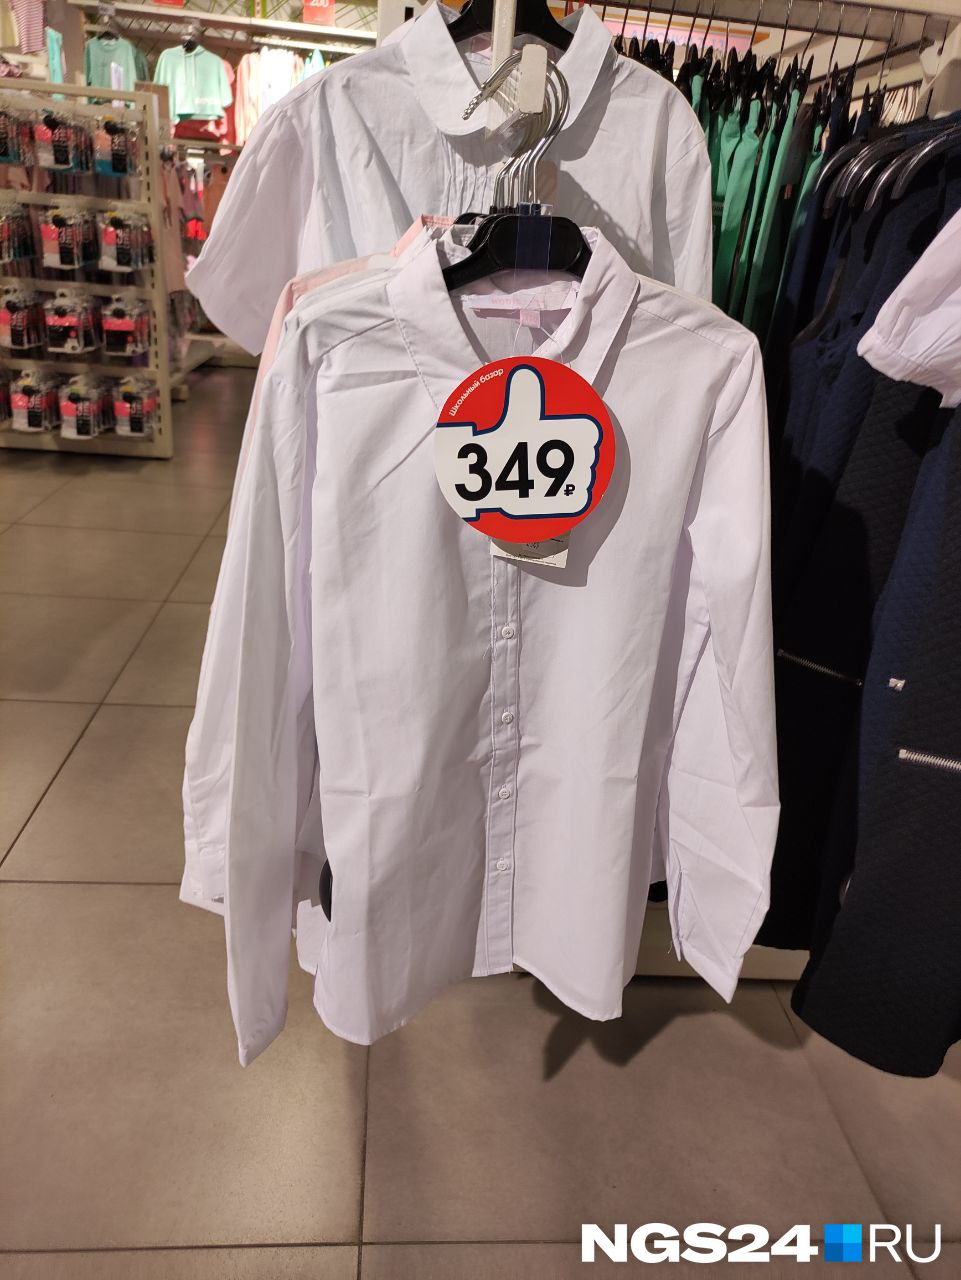 Массмаркет предлагает одежду по более низким ценам, чем специализированные магазины